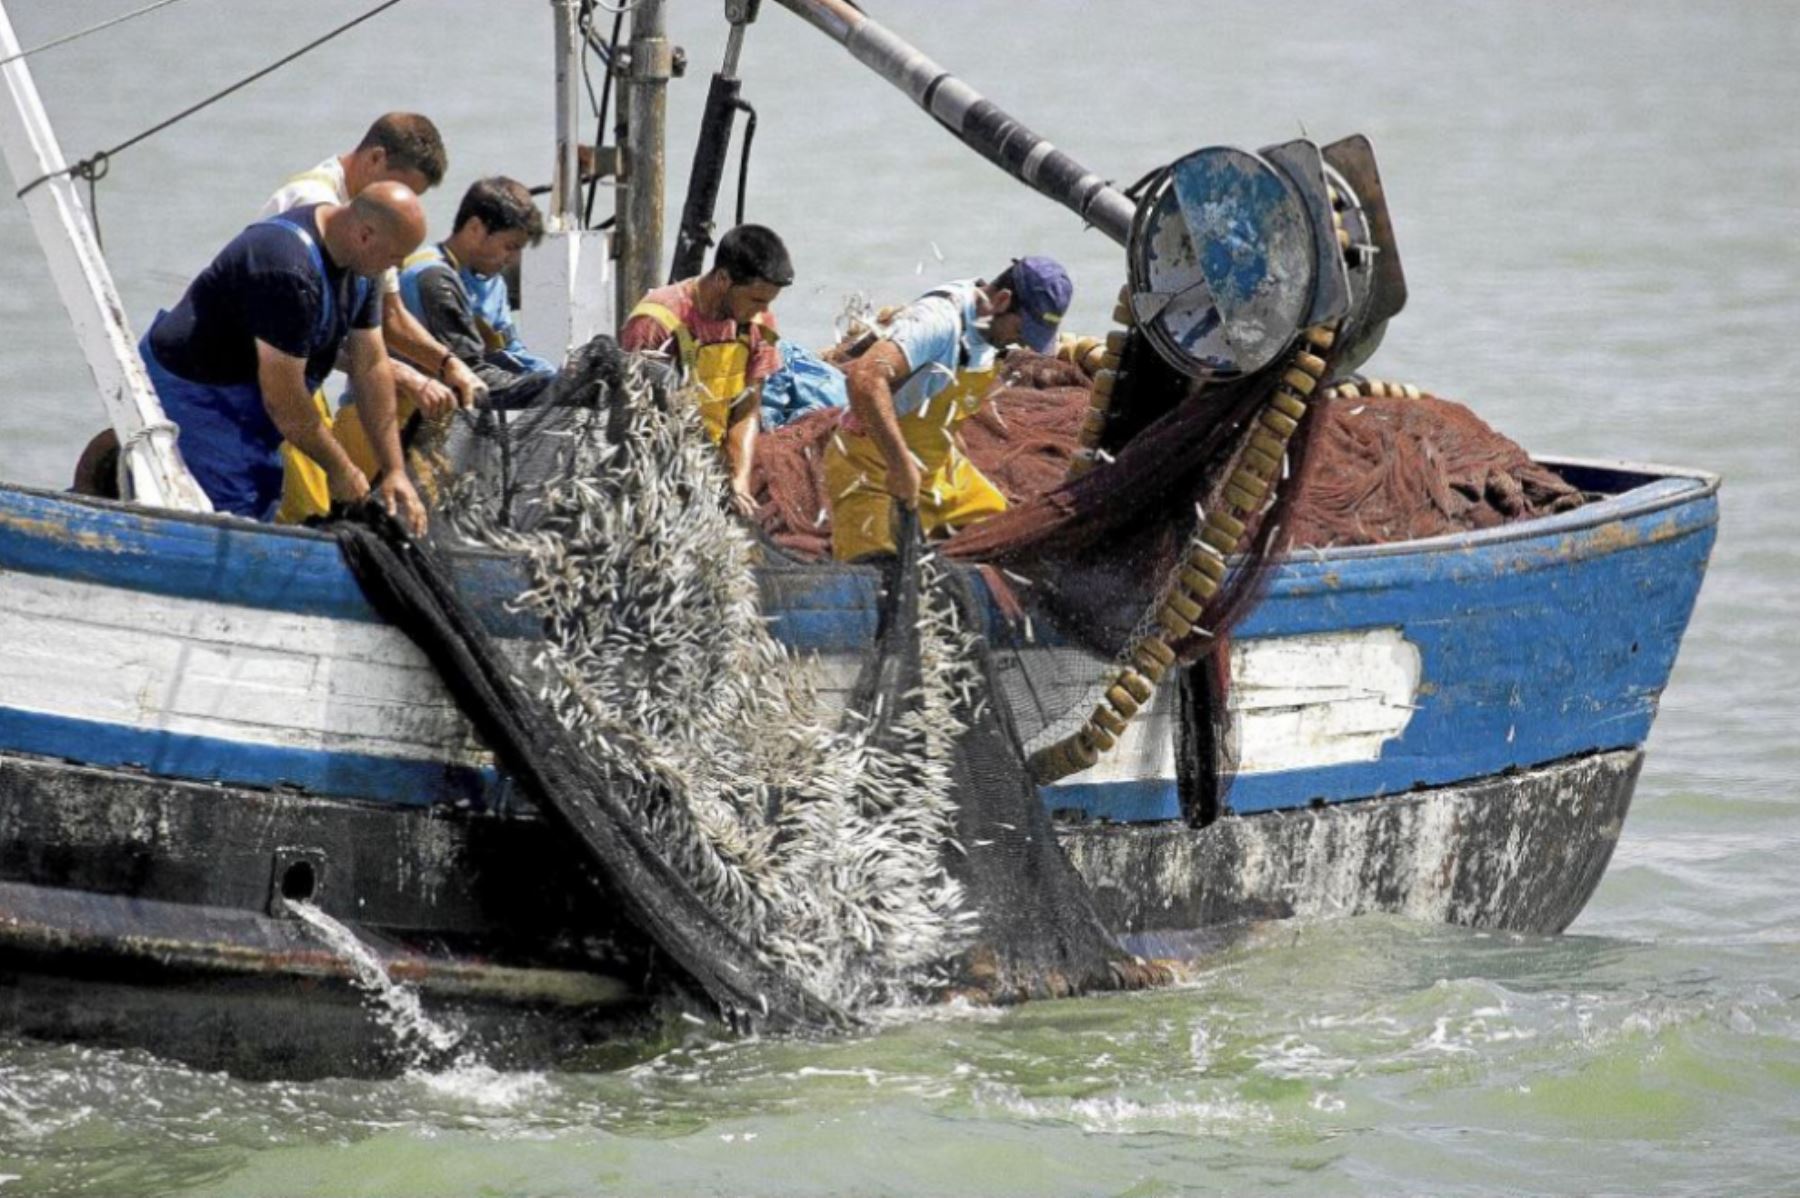 Los tres pesqueros peruanos fueron trasladados a la base naval del Subcomando de Guardacostas Sur, mientras que los tripulantes se encuentran a órdenes de las autoridades judiciales respectivas. Foto referencial: Internet